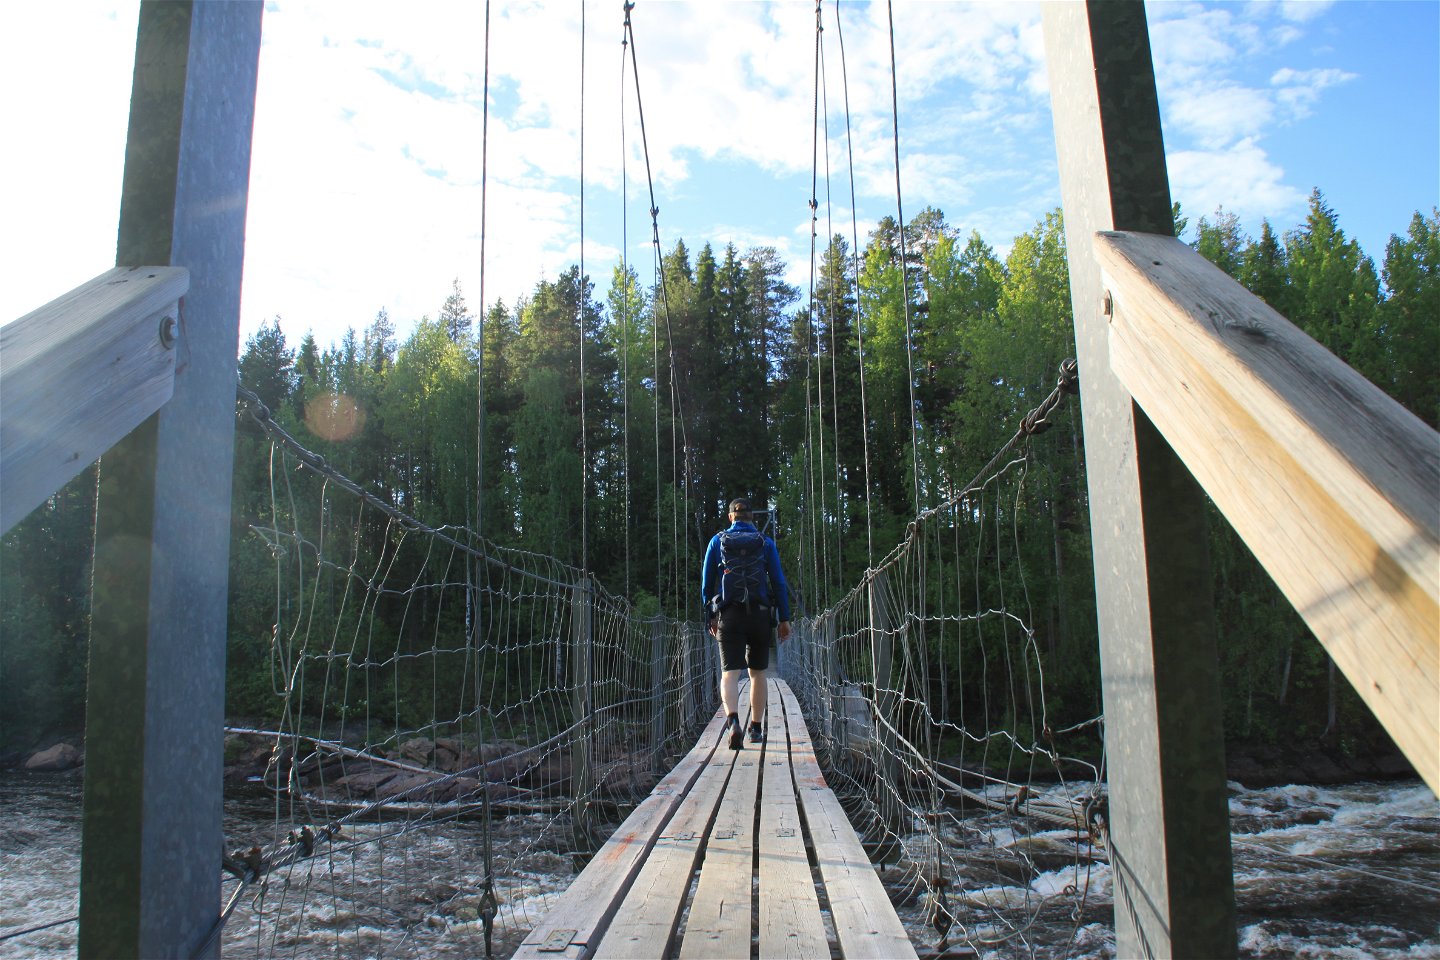 The small suspension bridge over Lina river